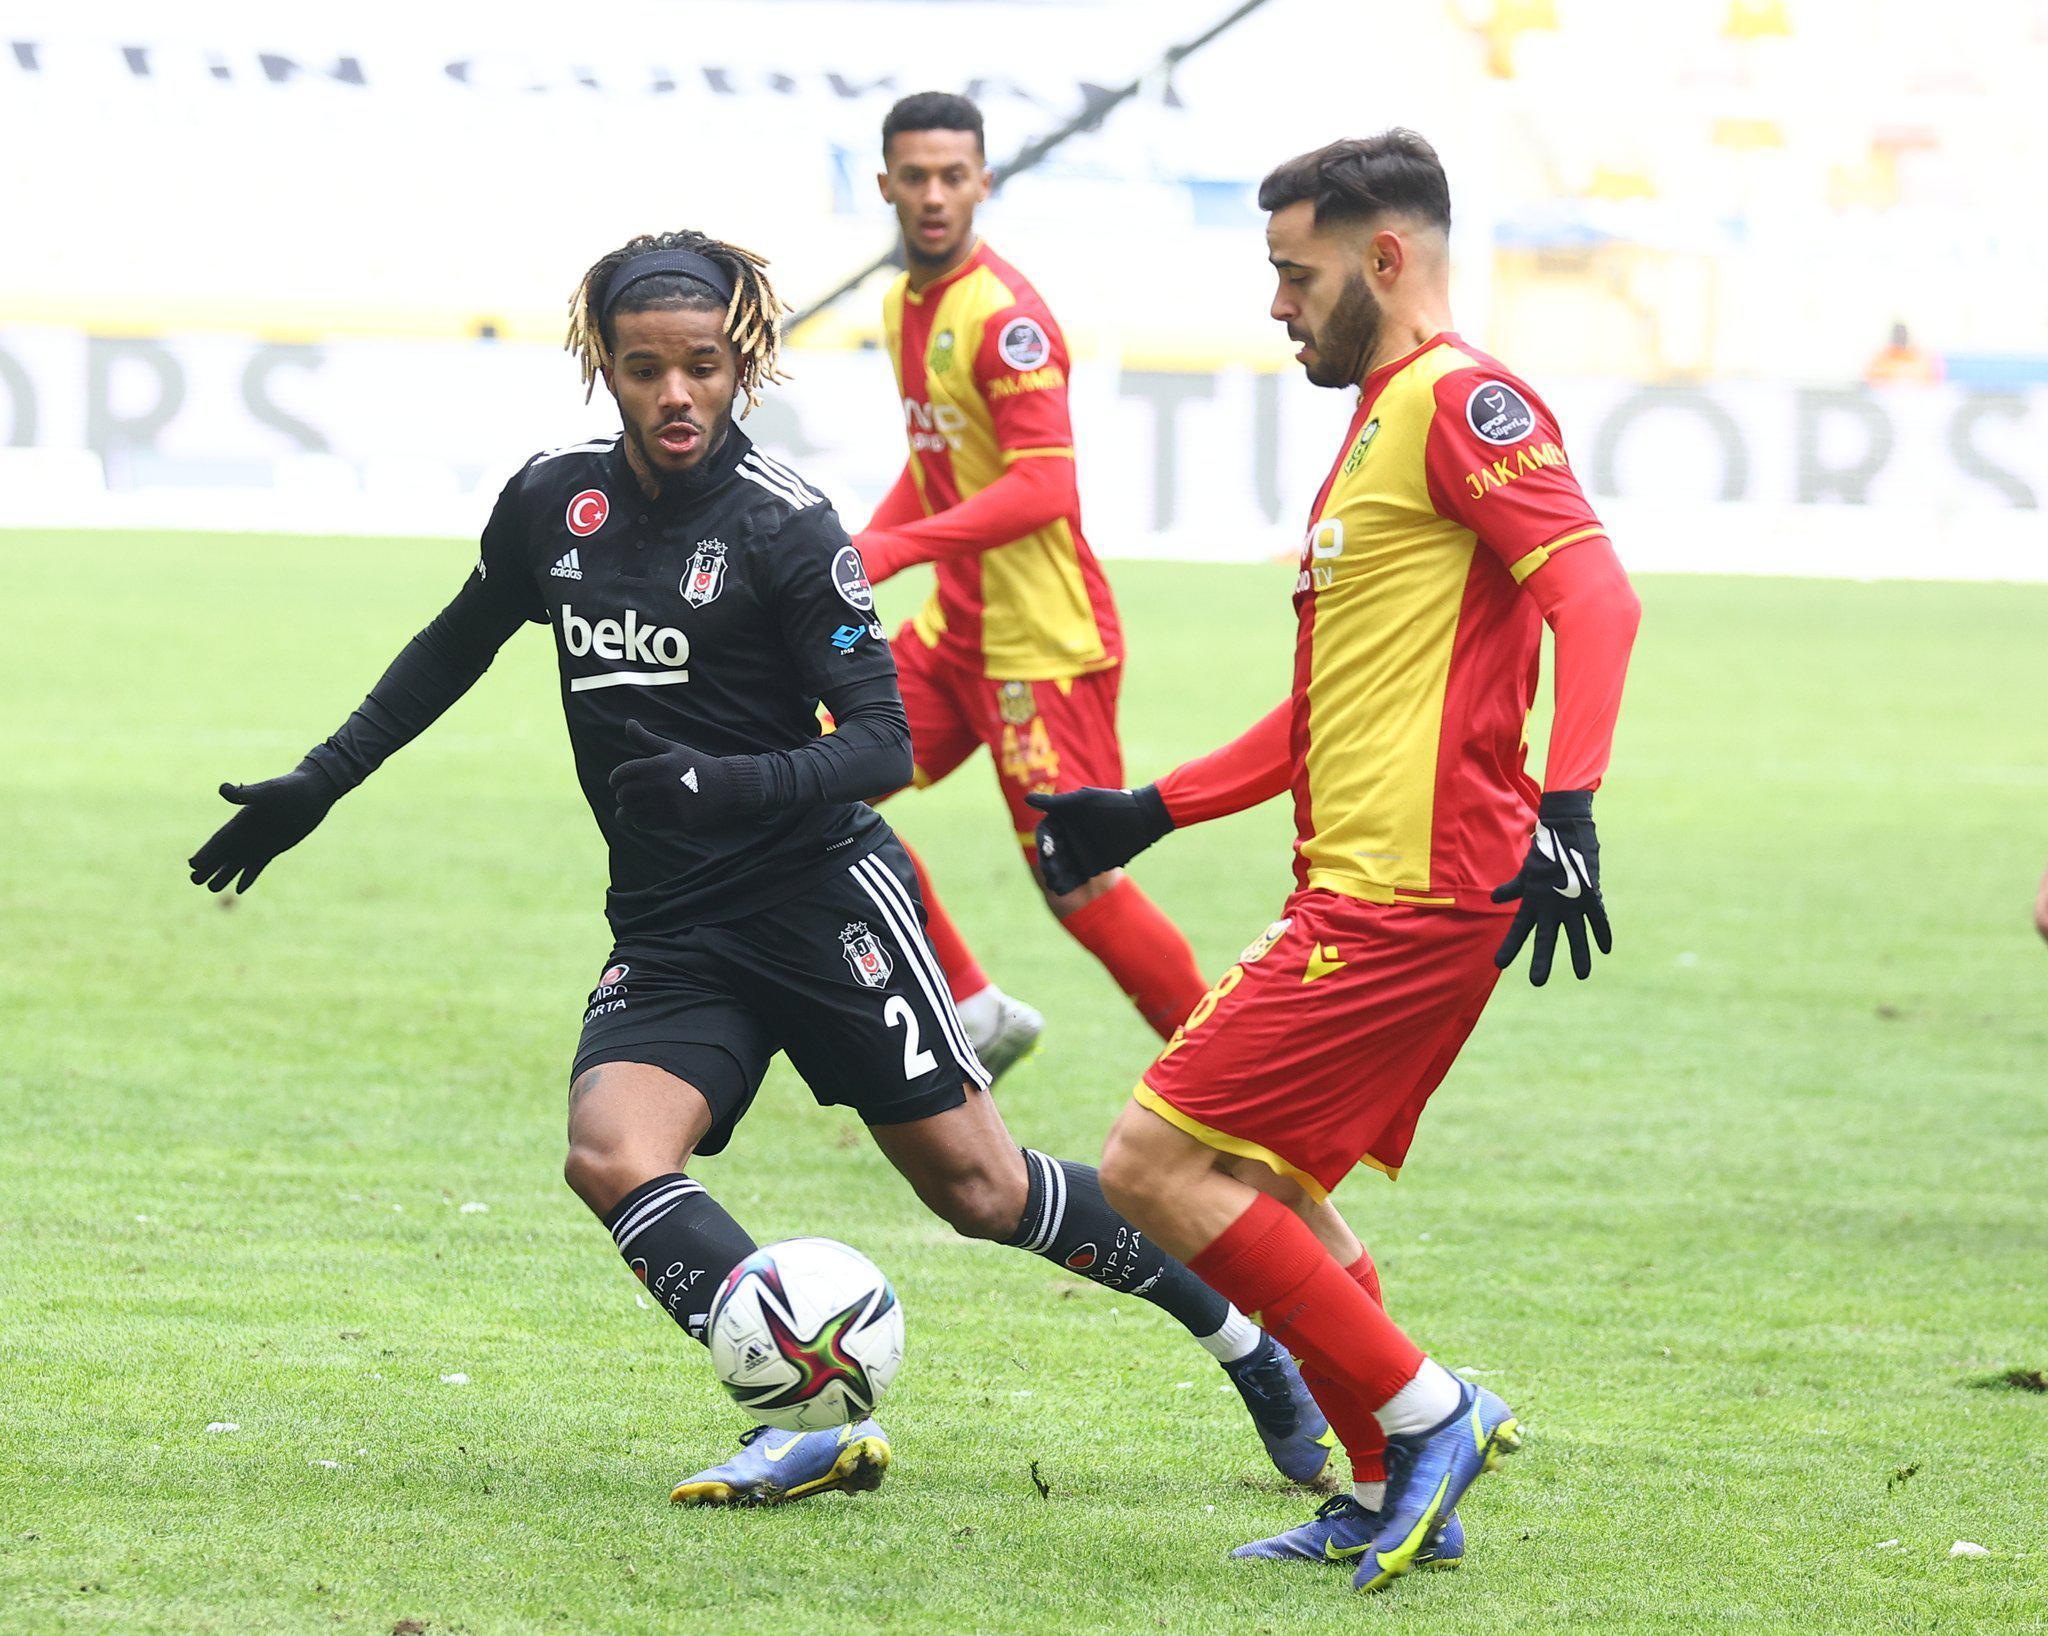 ÖK Yeni Malatyaspor - Beşiktaş  maç sonucu: 1-1